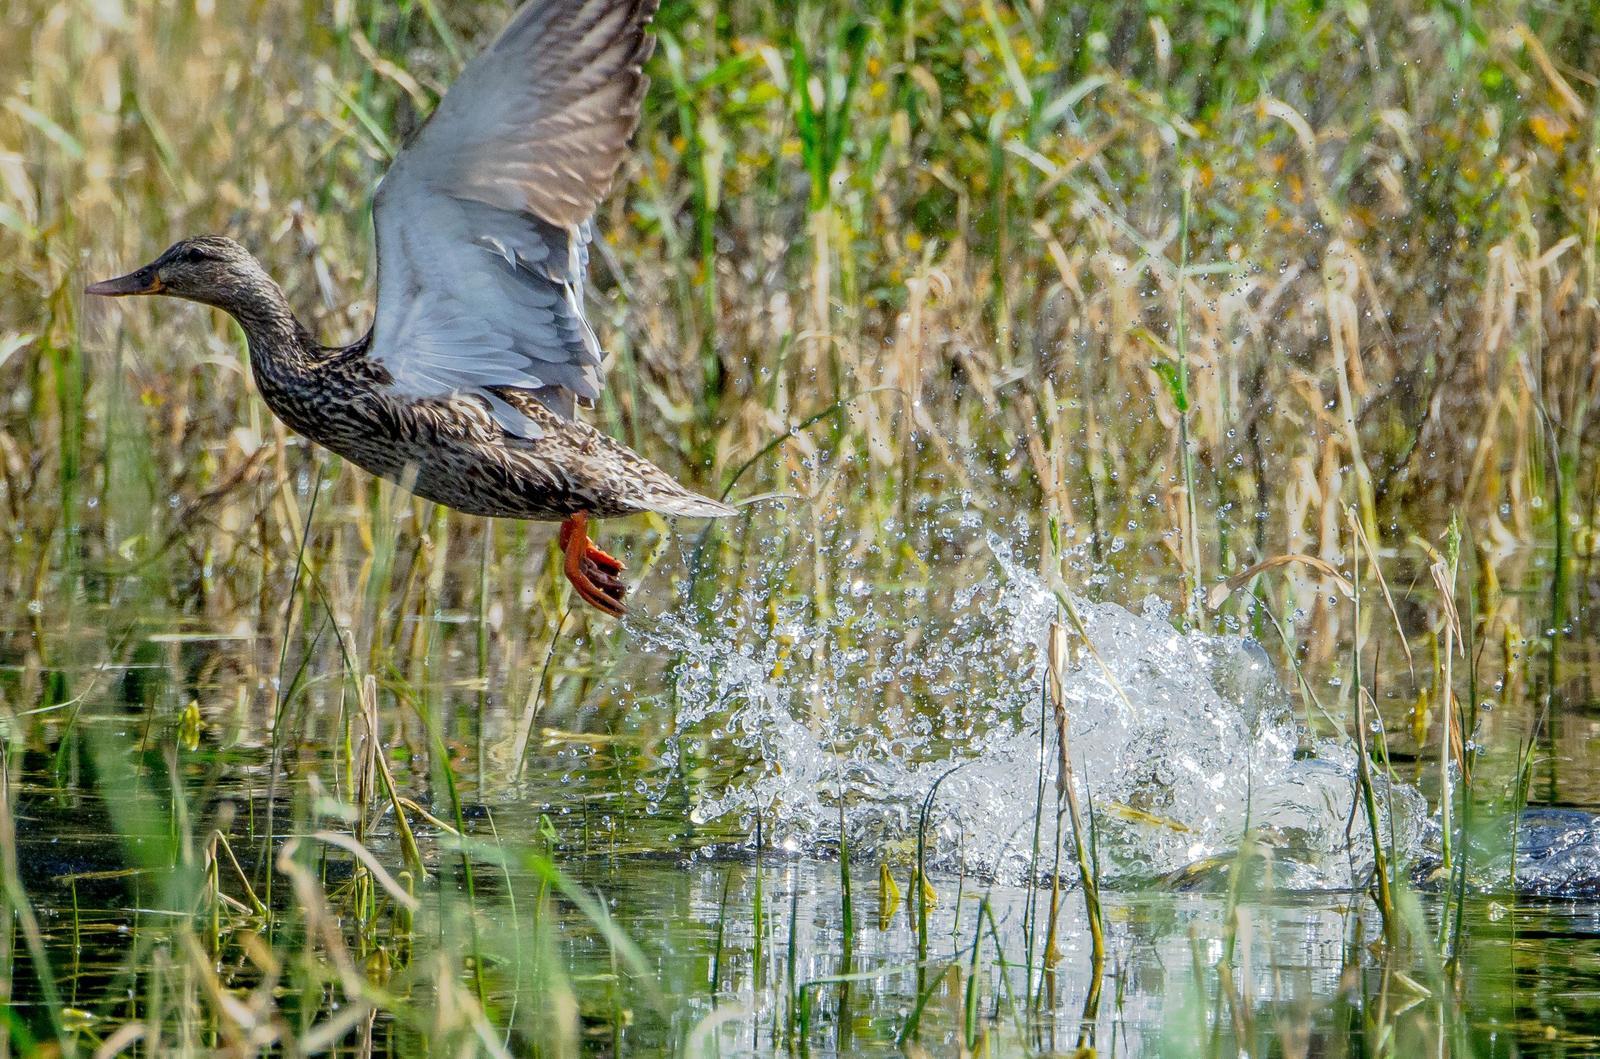 Mallard/Mexican Duck Photo by Scott Yerges